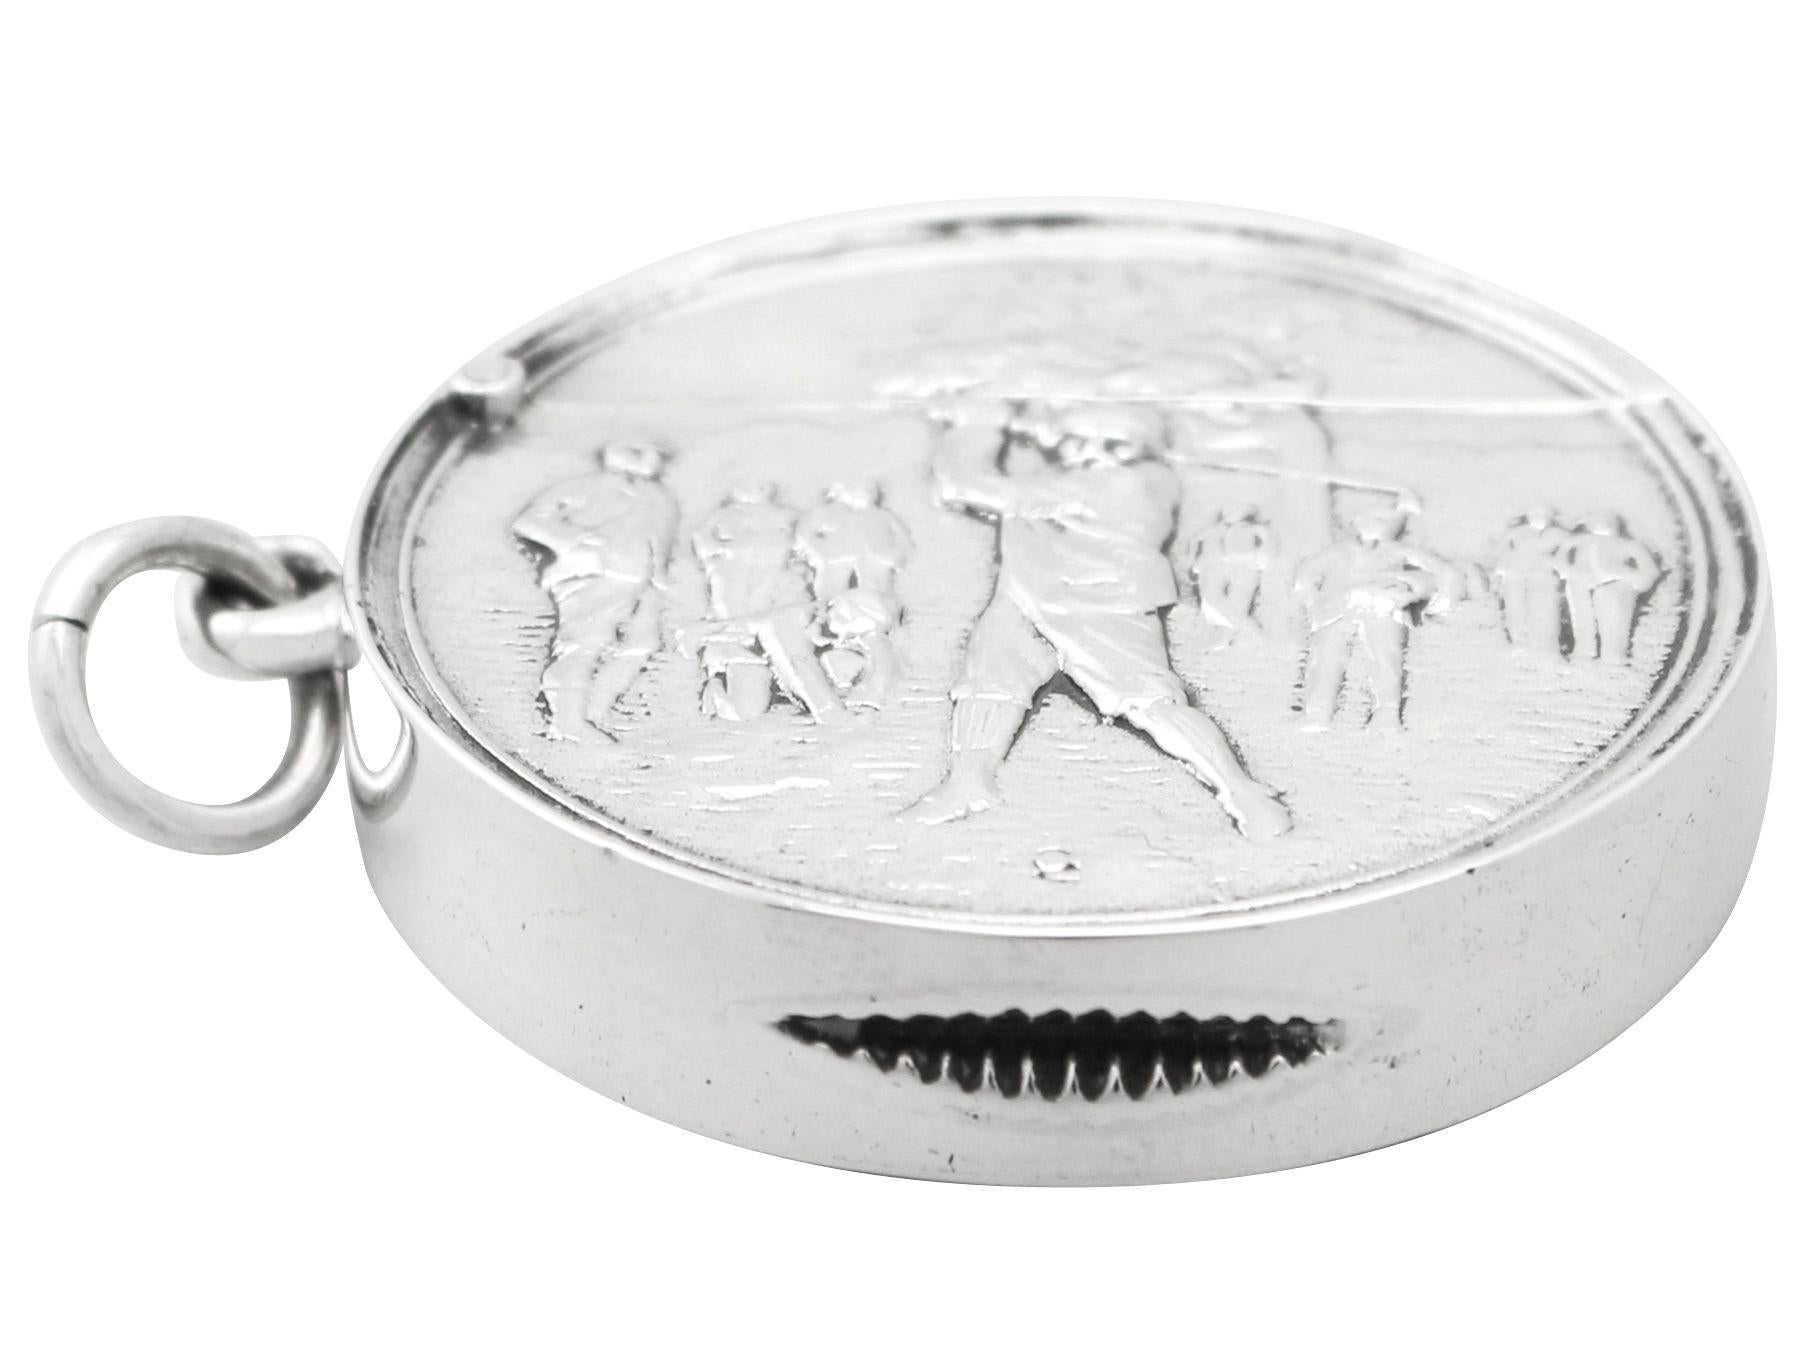 Eine feine und beeindruckende antike edwardianische englische Sterling Silber Vesta Fall mit Golf Interesse; eine Ergänzung zu unserer Sport bezogenen Silberwaren Sammlung.

Dieses feine antike edwardianische englische Vesta-Gehäuse aus